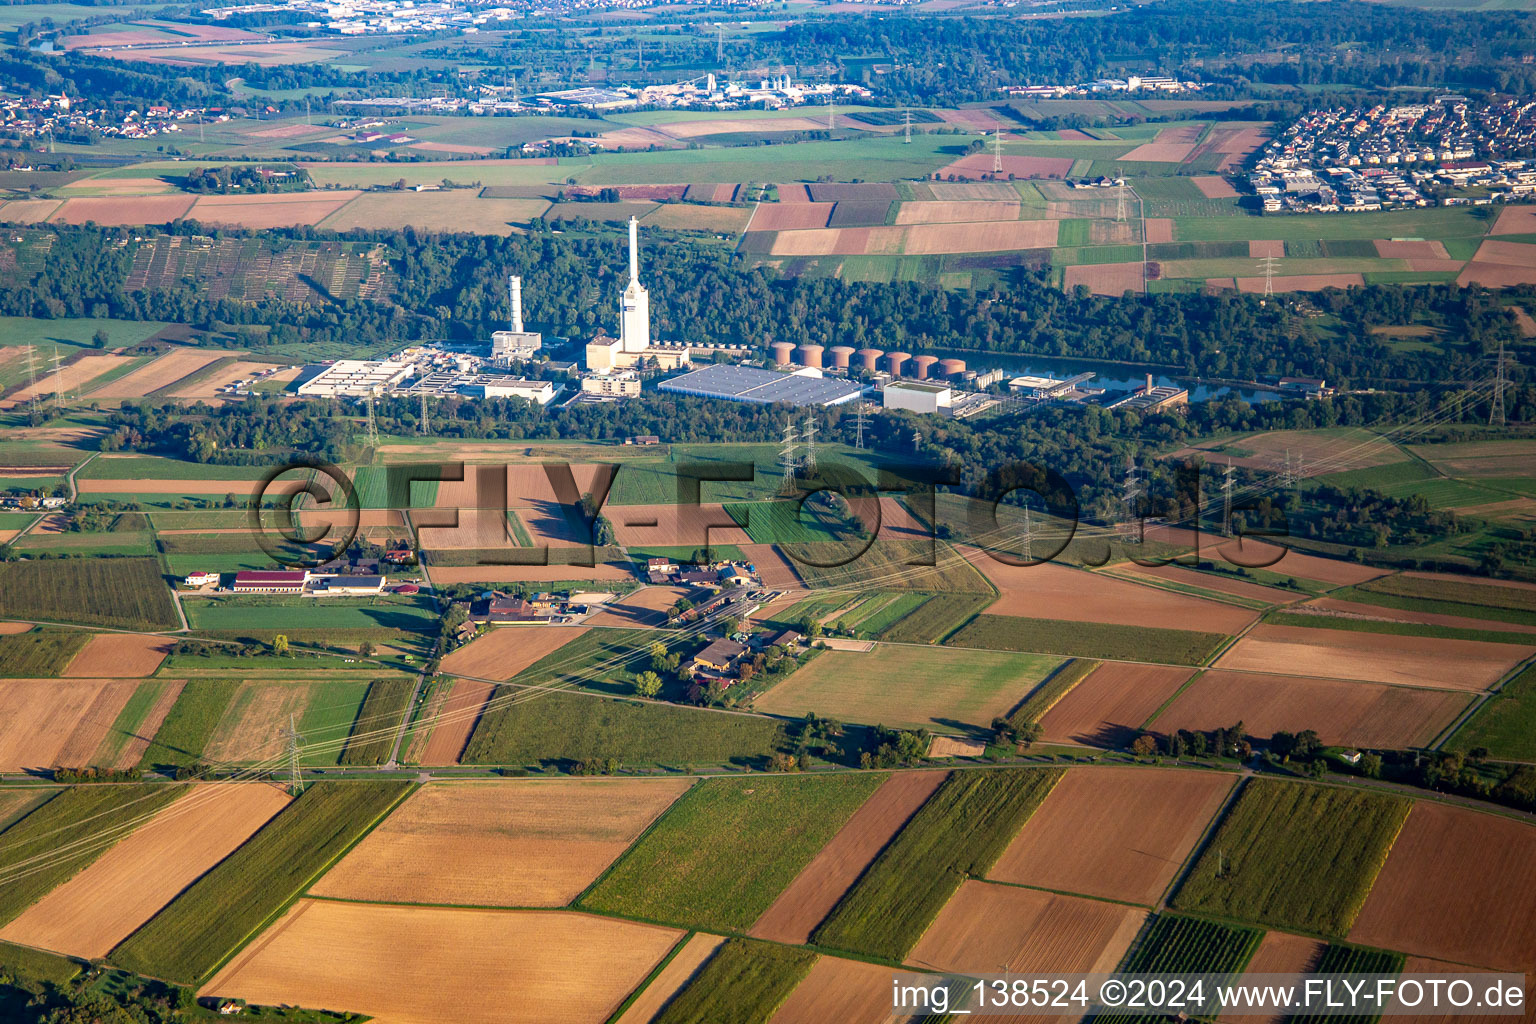 Luftbild von Energie- und Technologiepark in Marbach am Neckar im Bundesland Baden-Württemberg, Deutschland